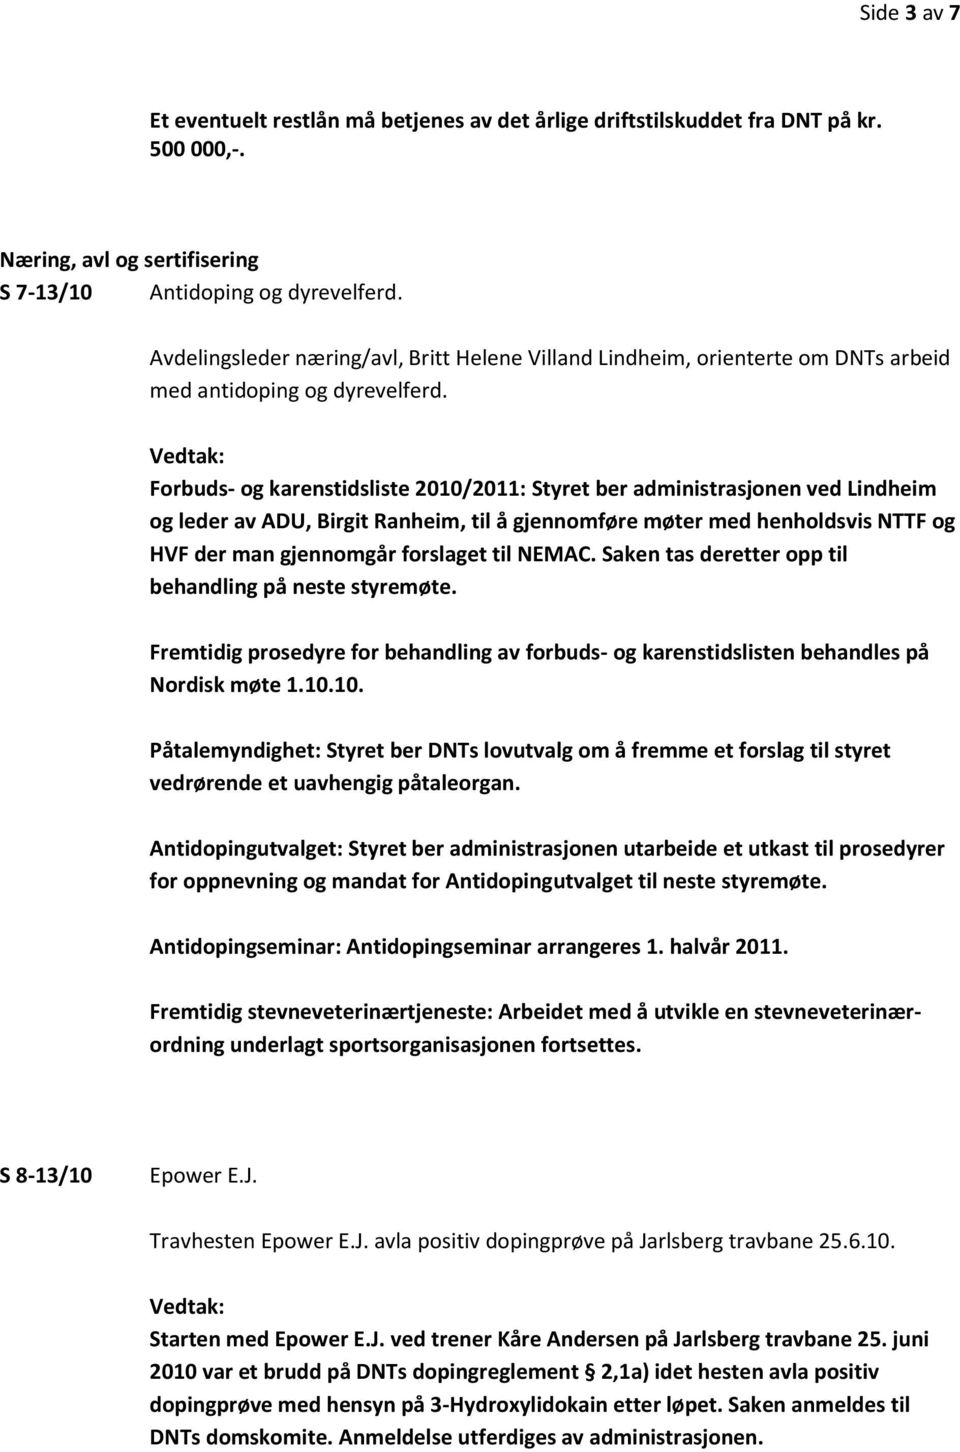 Forbuds- og karenstidsliste 2010/2011: Styret ber administrasjonen ved Lindheim og leder av ADU, Birgit Ranheim, til å gjennomføre møter med henholdsvis NTTF og HVF der man gjennomgår forslaget til